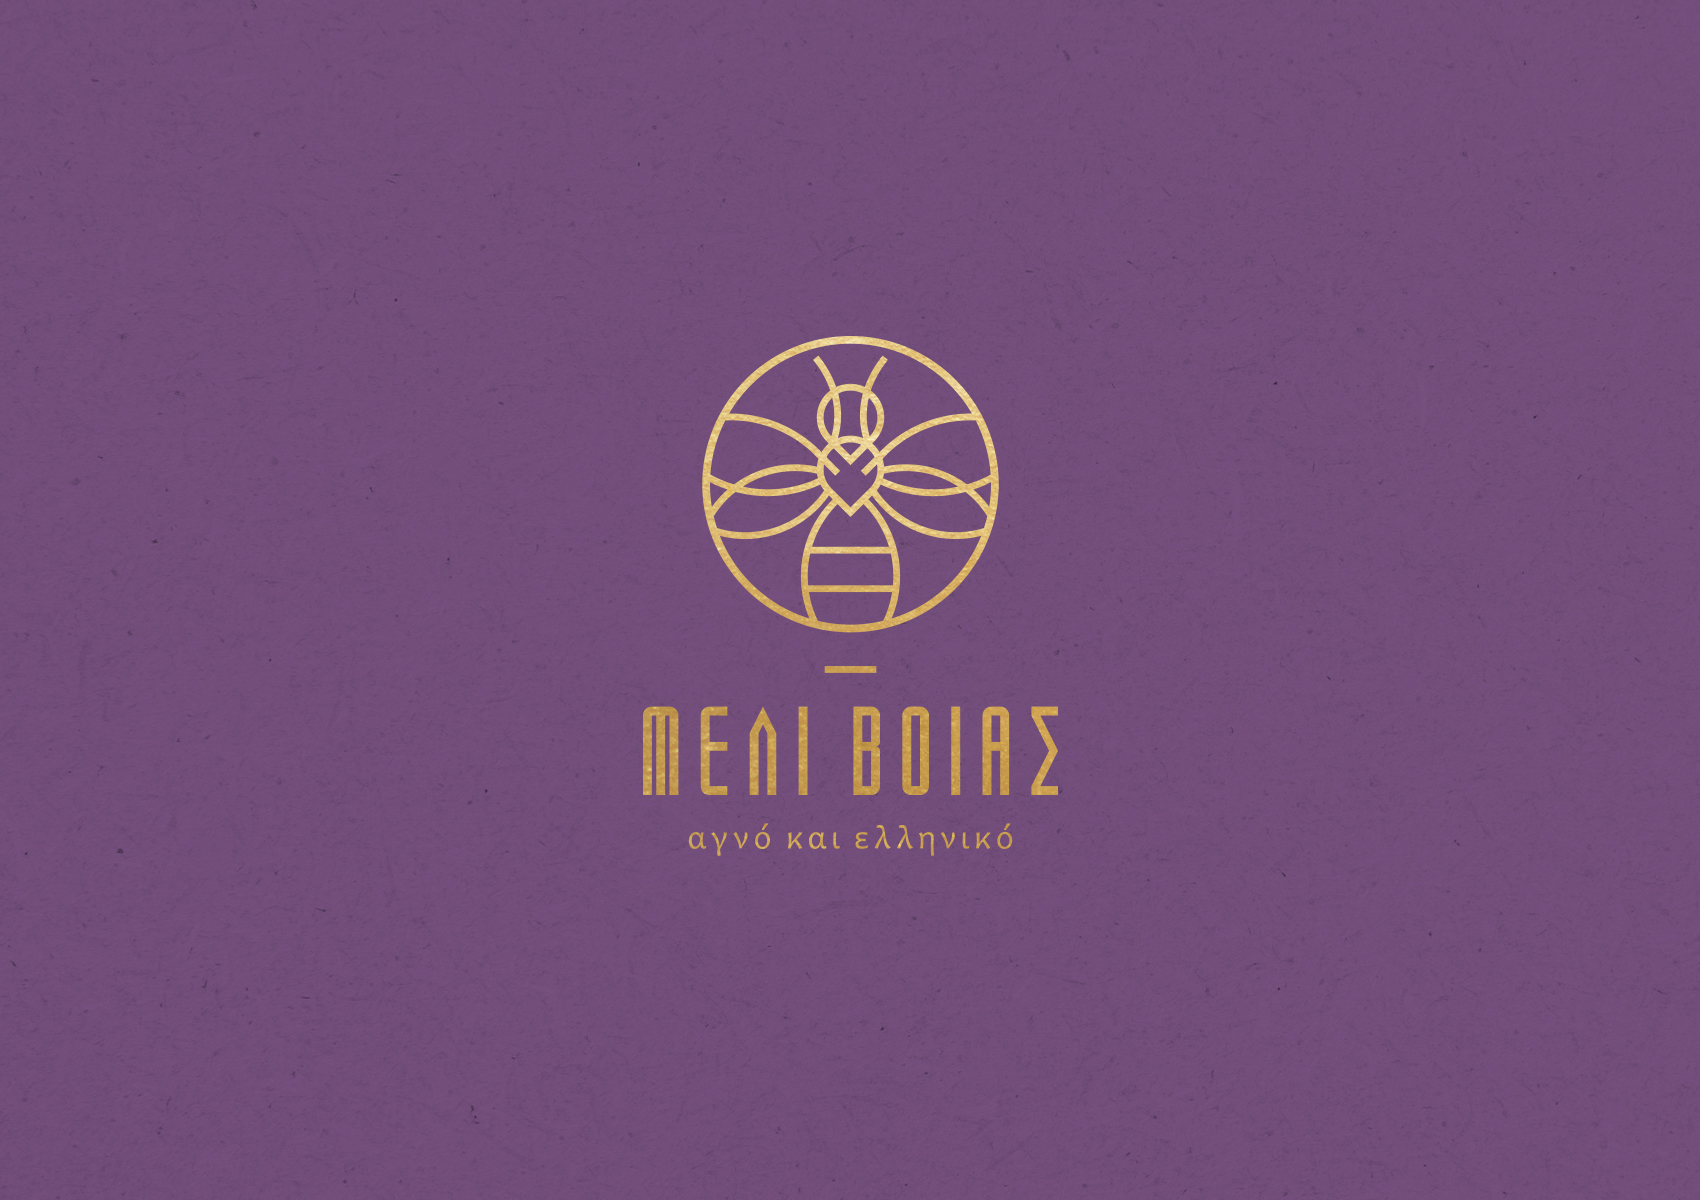 Meli Voias purple logo 1700x1200 by xhristakis